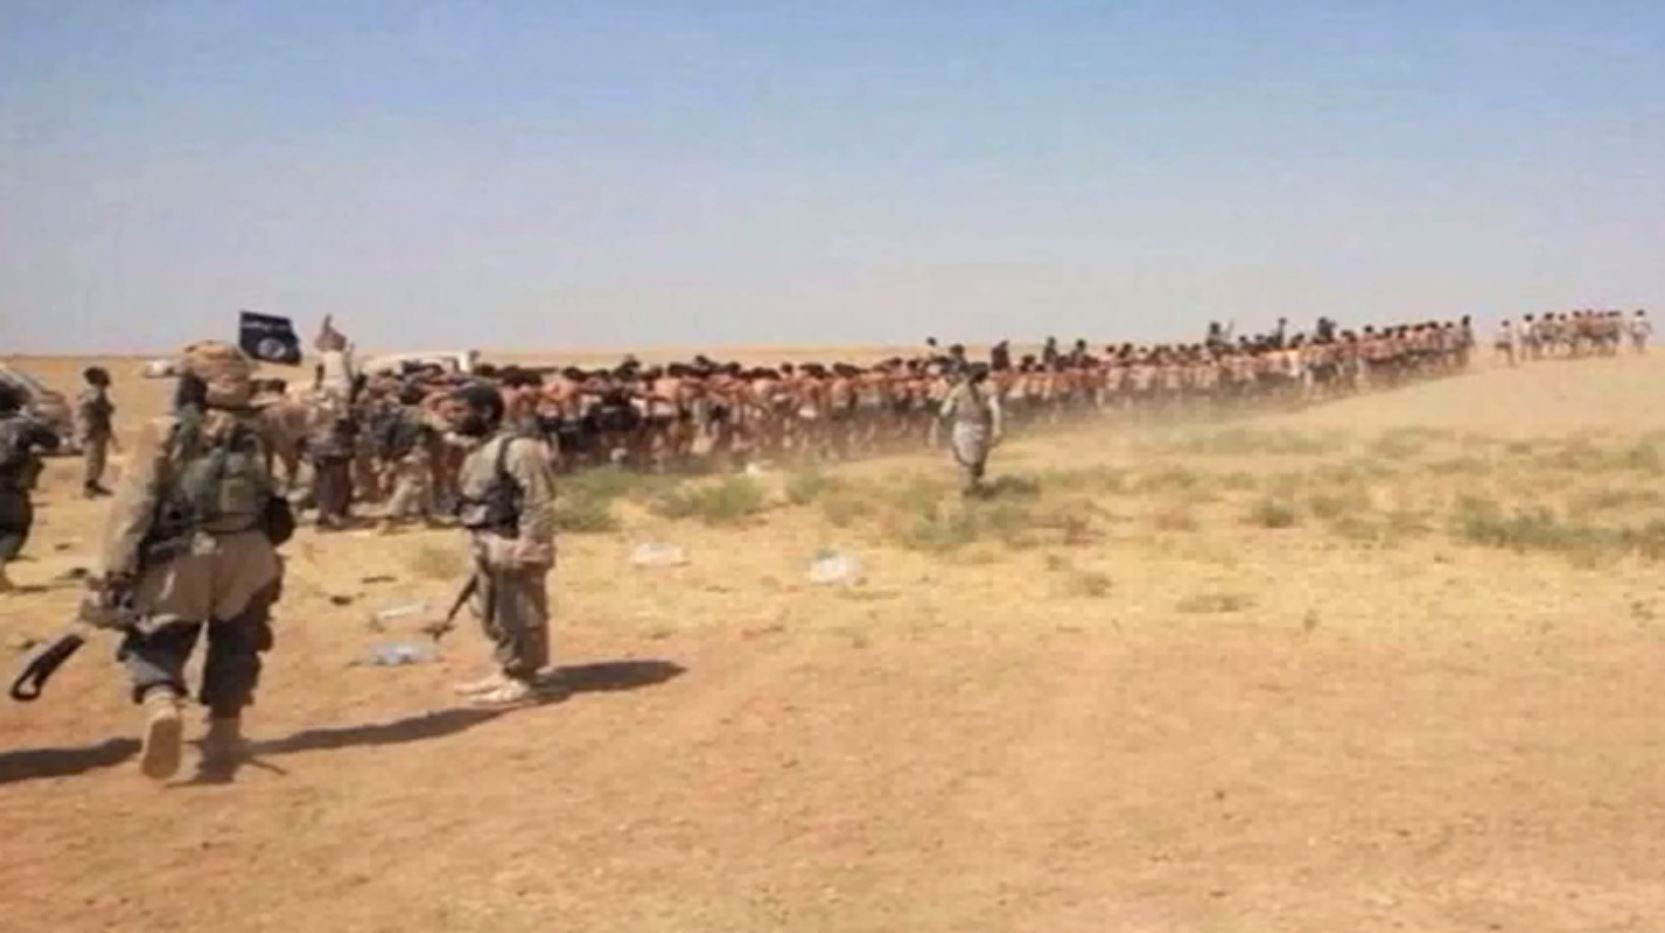 Les soldats de l'armée syrienne ont dû marcher de longues heures dans le désert avant d'être froidement exécutés.